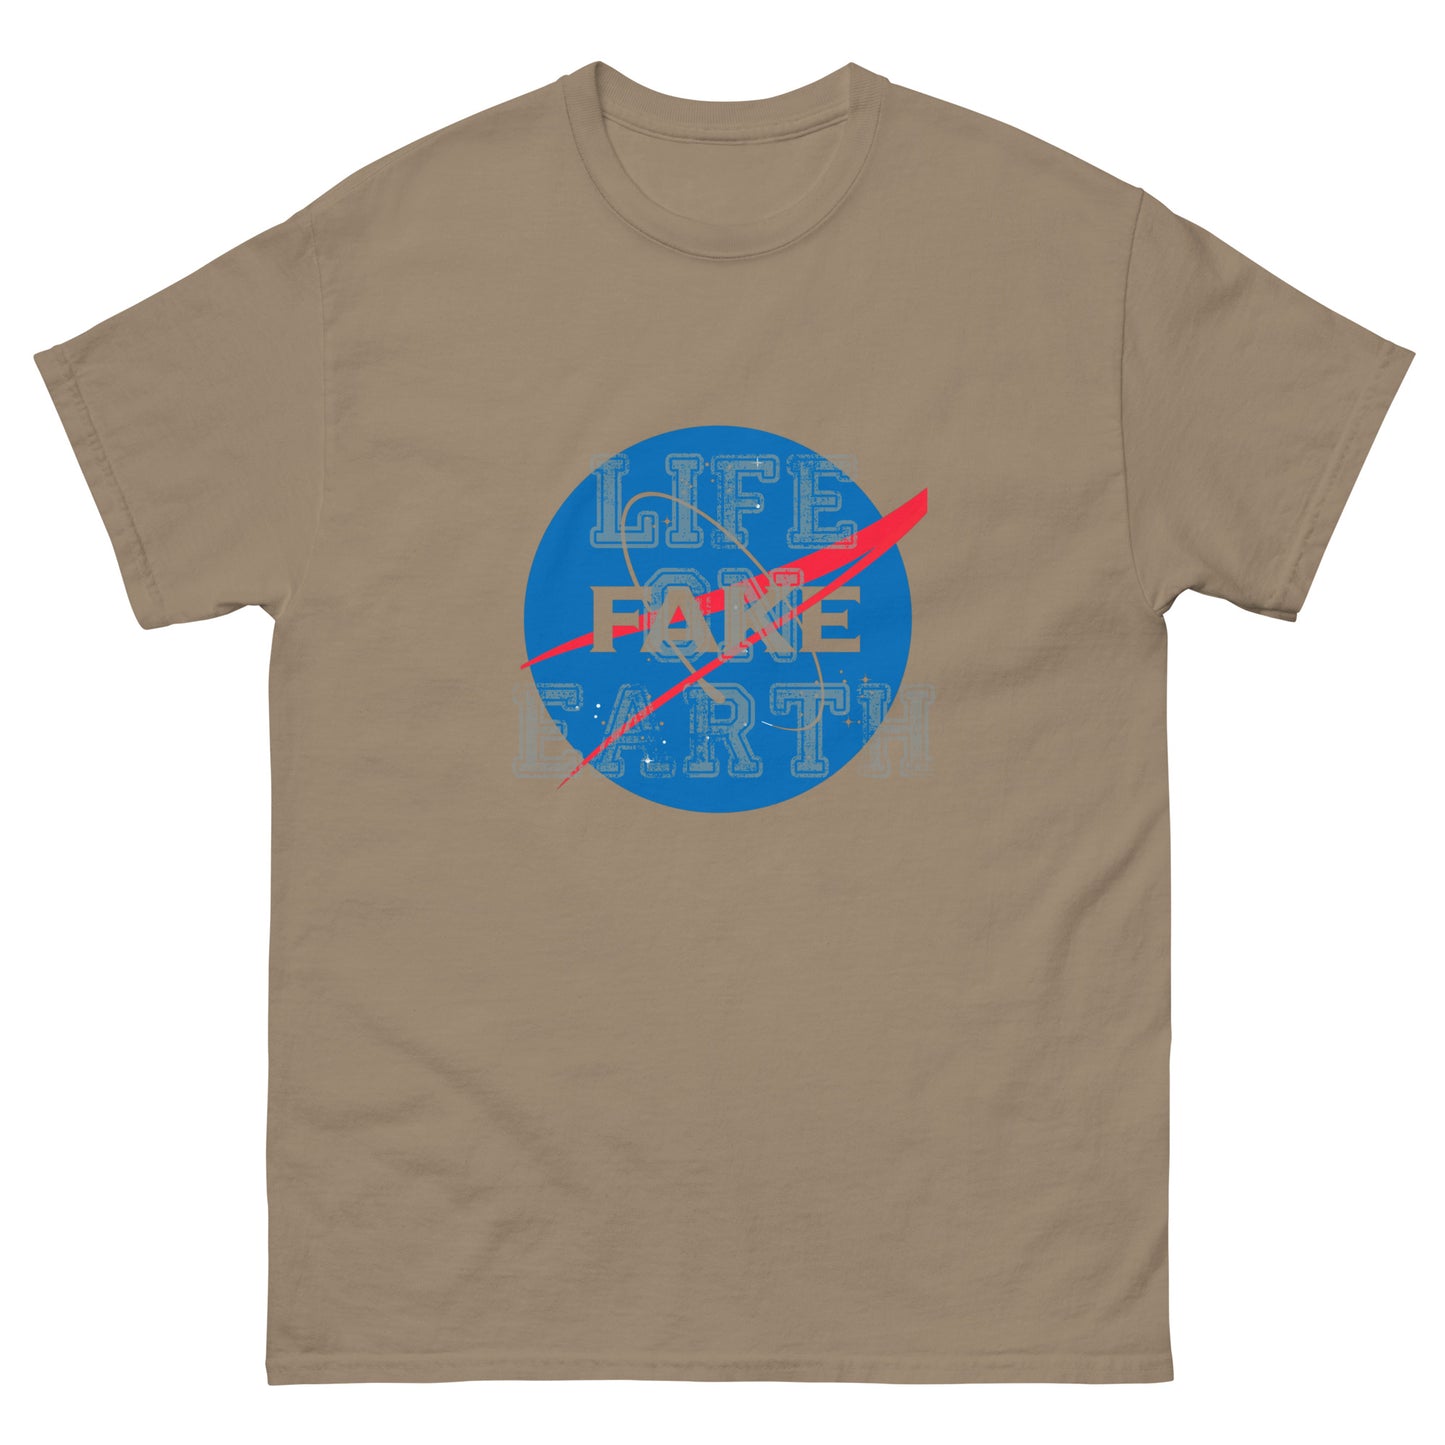 "Fake Space" - T-Shirt